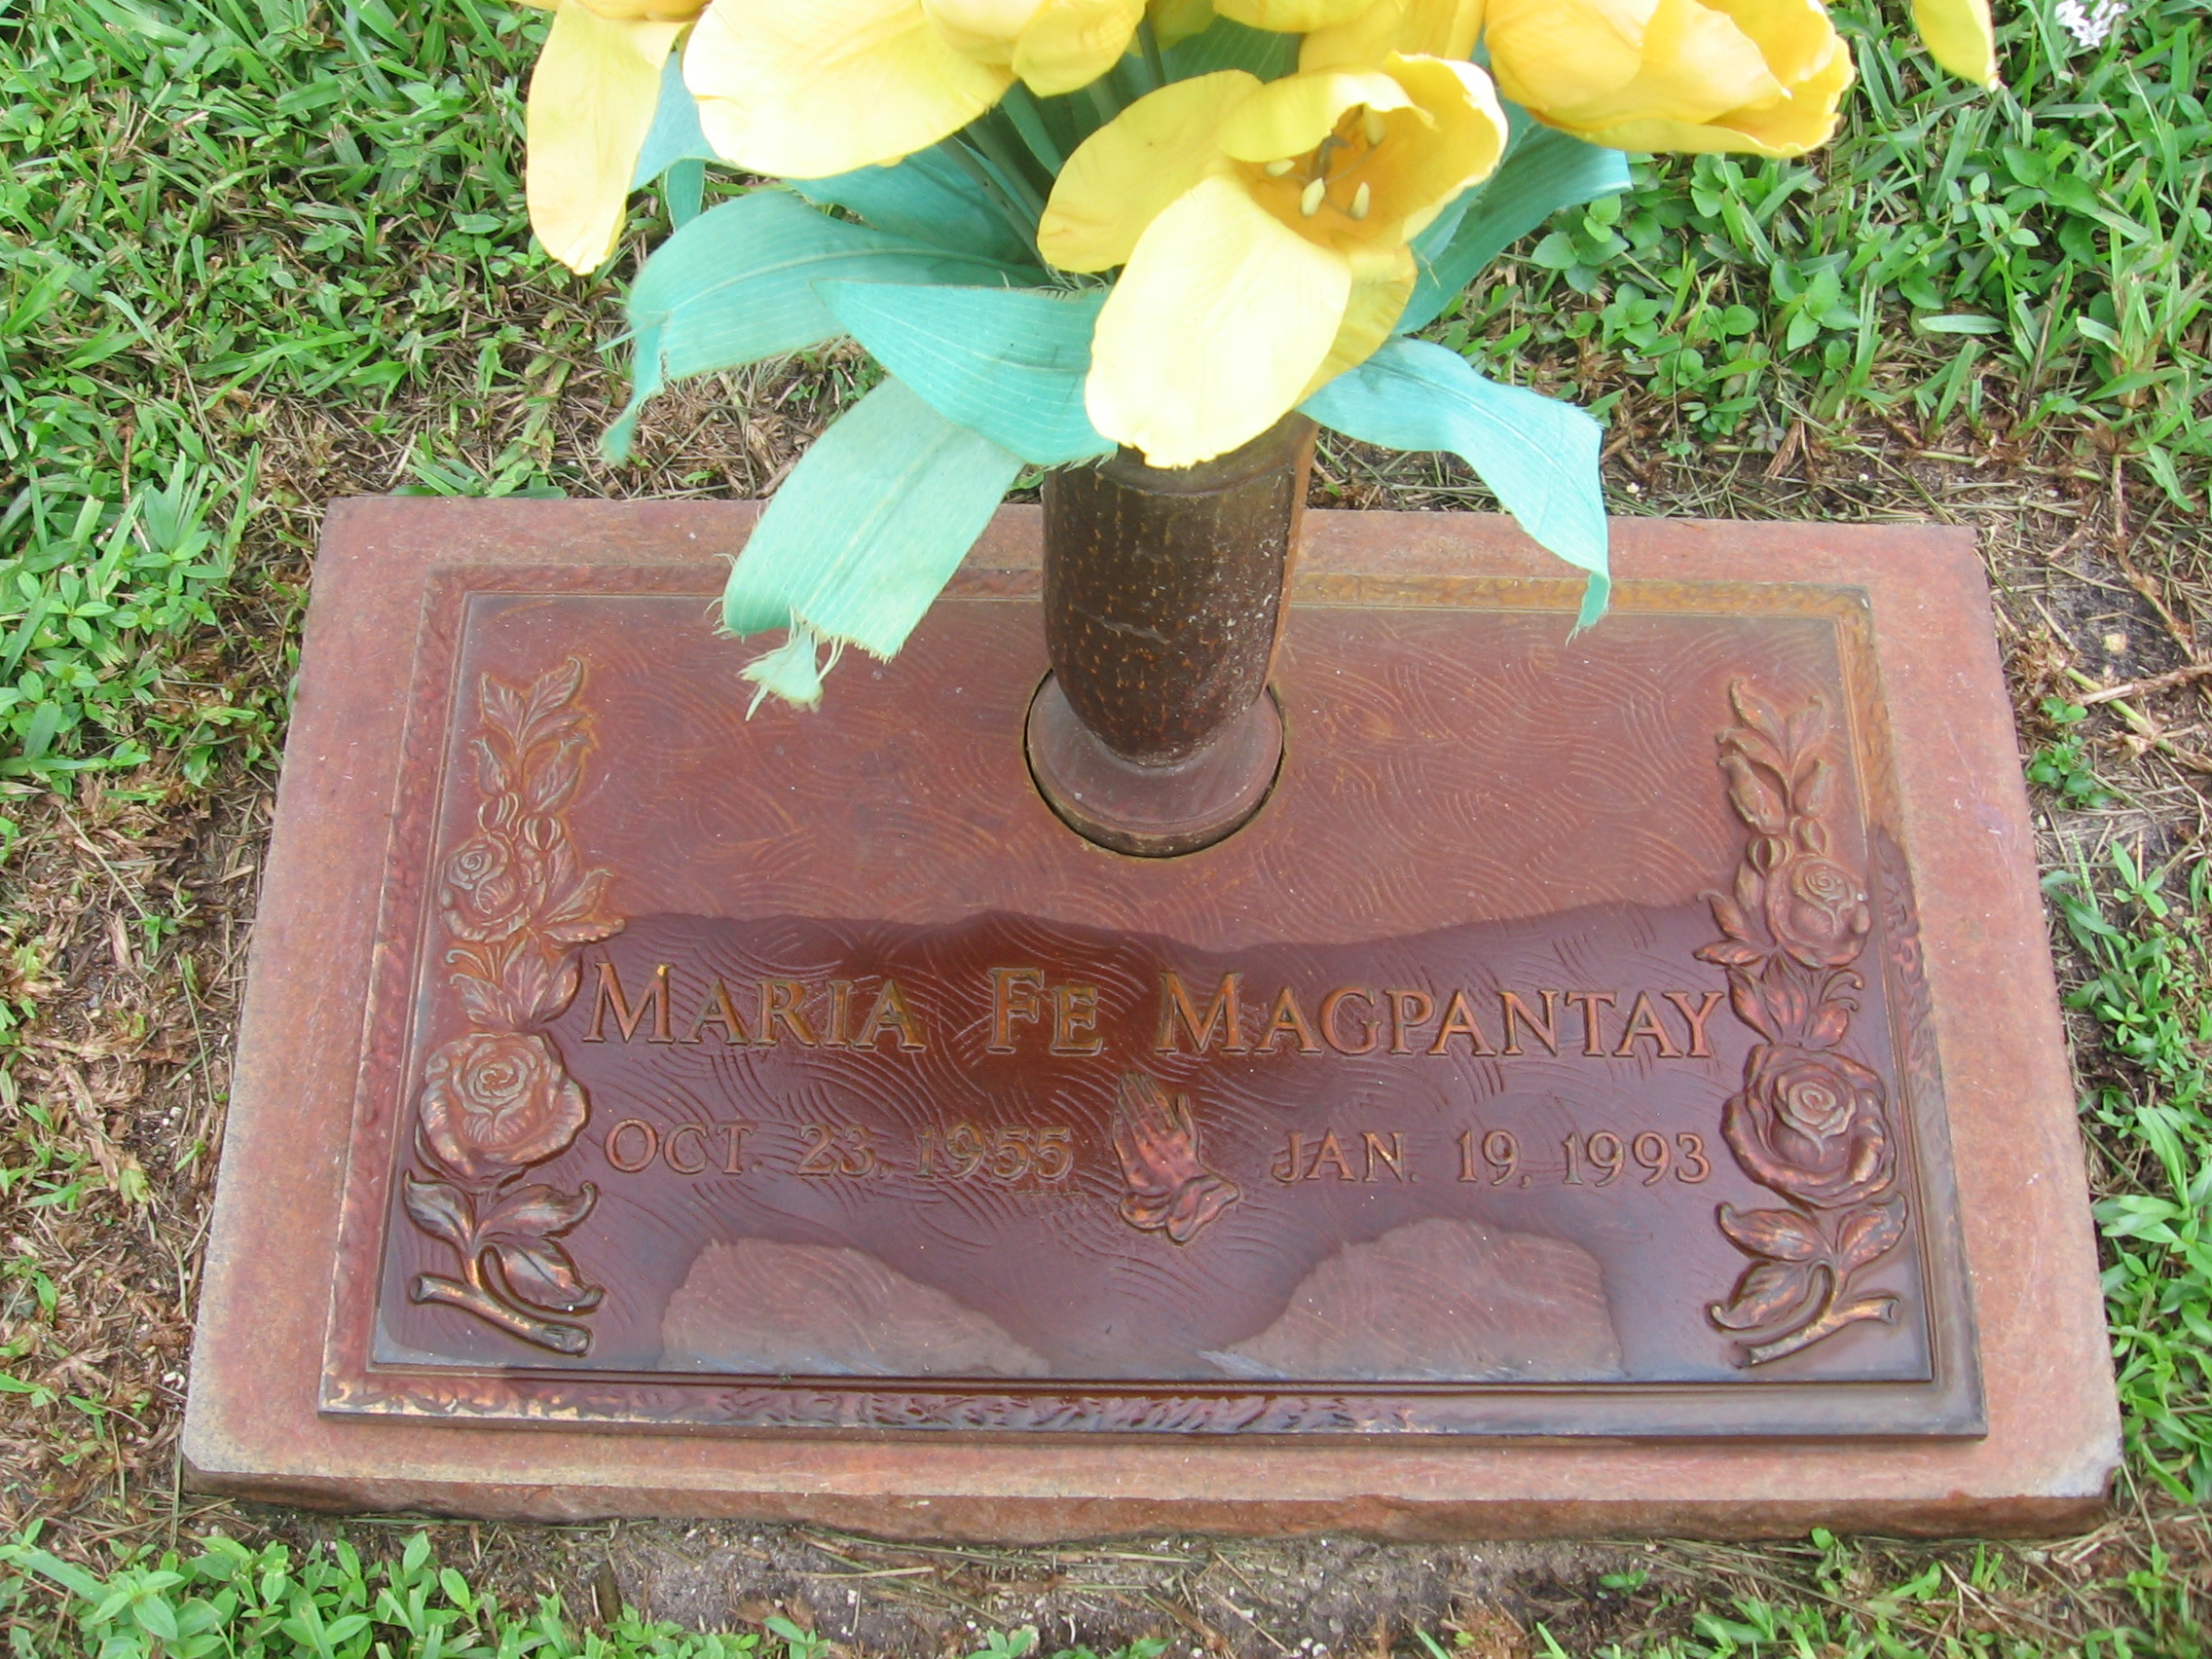 Maria Fe Magpantay